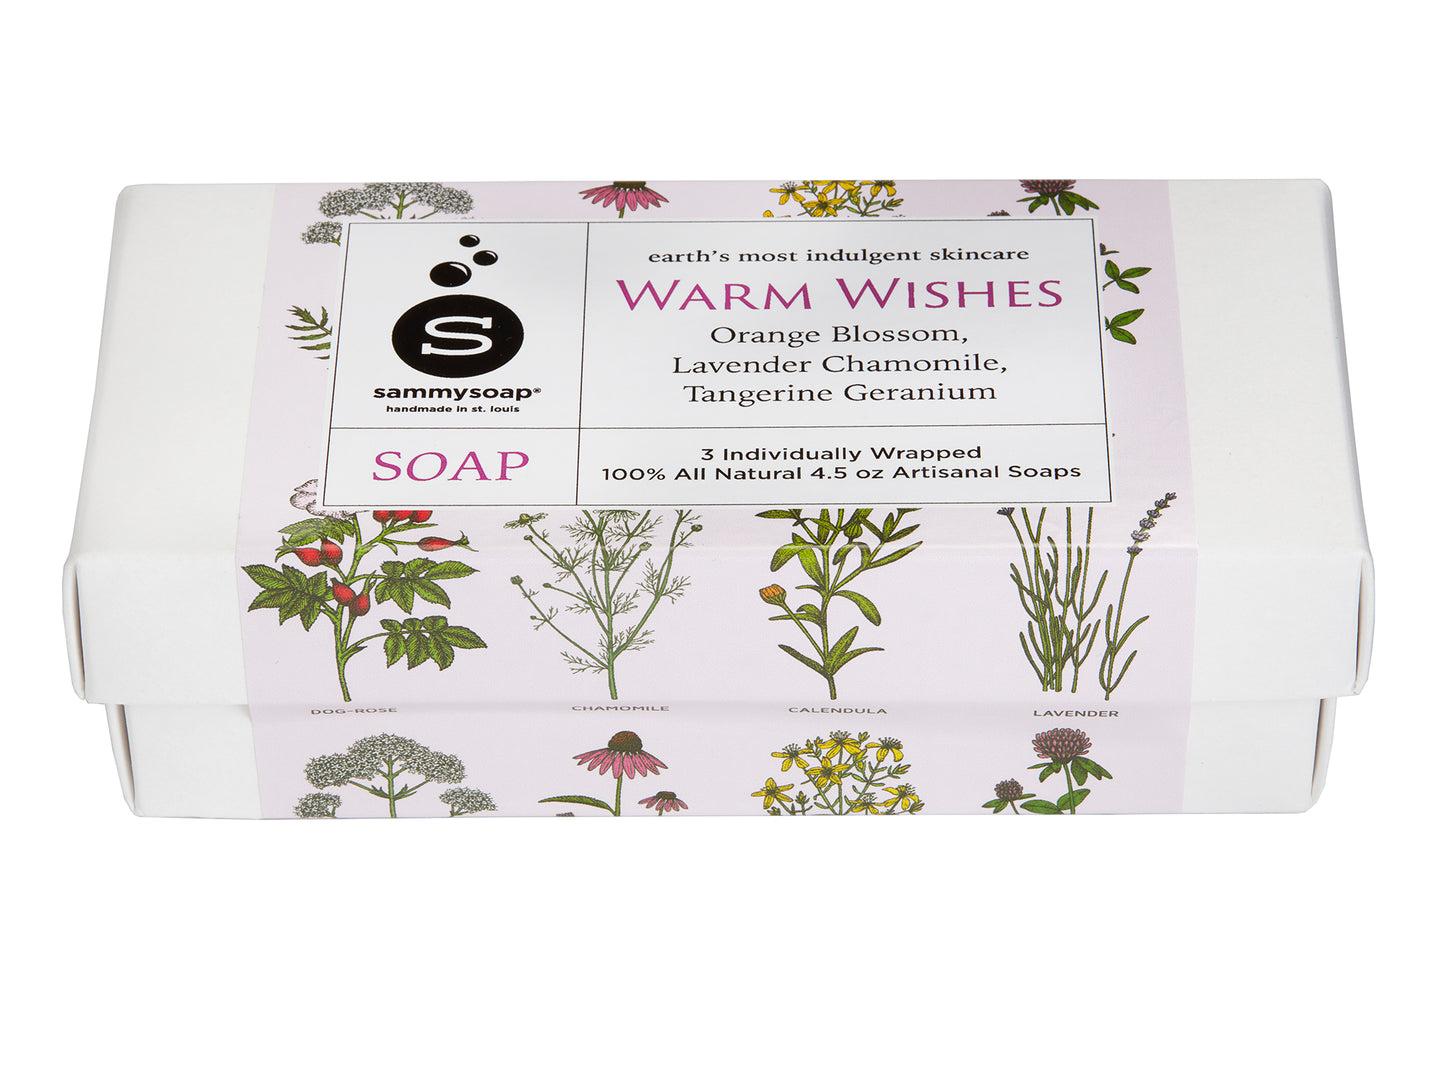 Warm Wishes Wildflowers Three Pack Gift Box